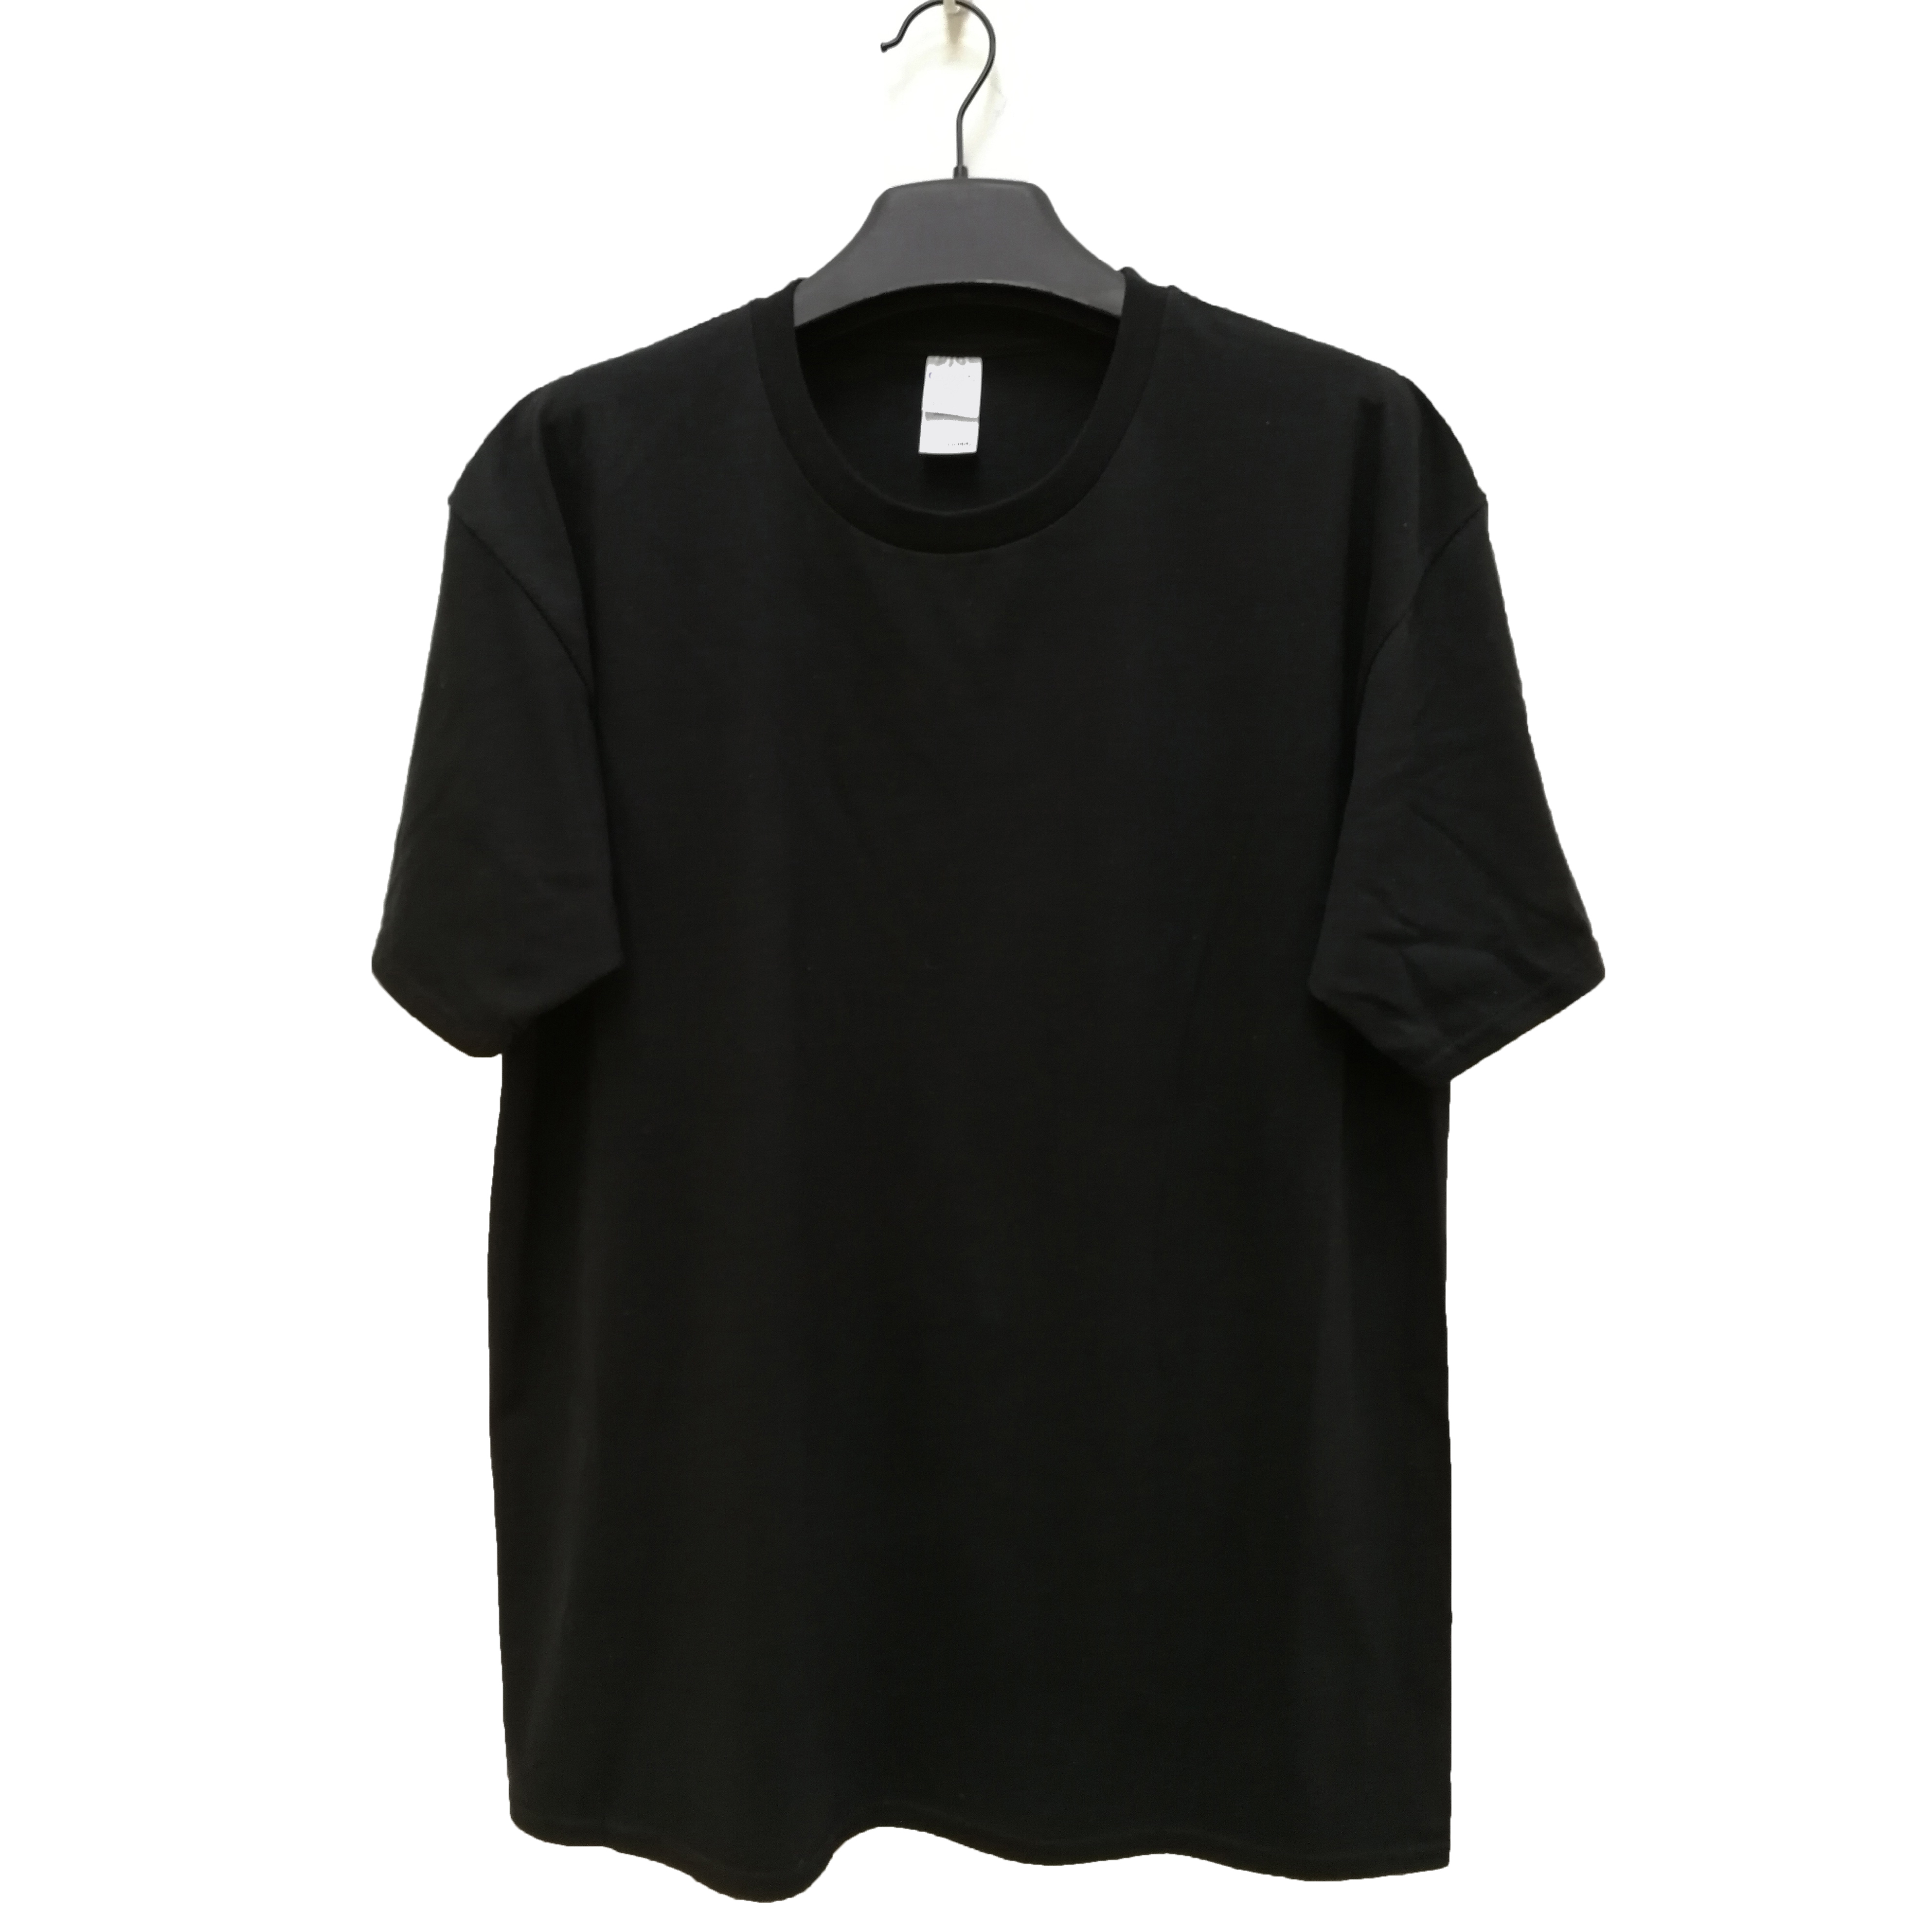 Europe style for Disney Jacket - Unisex plain blank custom logo printing 100% cotton round neck t-shirt – Gift